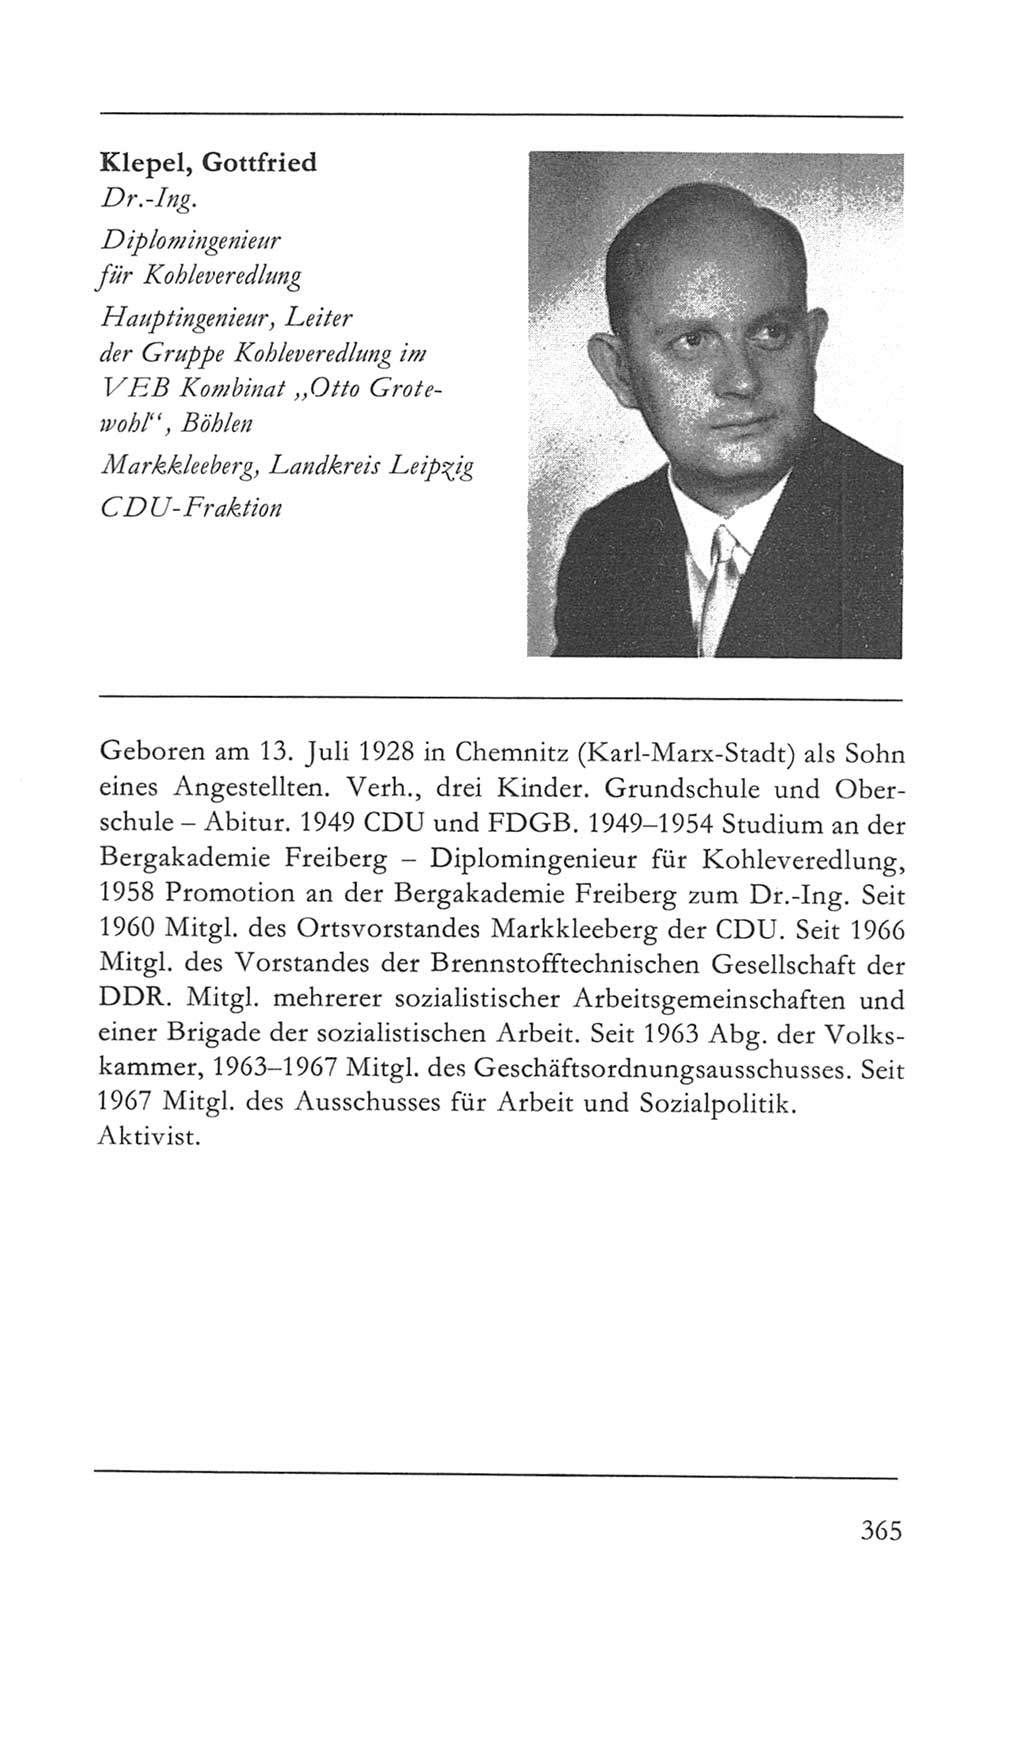 Volkskammer (VK) der Deutschen Demokratischen Republik (DDR) 5. Wahlperiode 1967-1971, Seite 365 (VK. DDR 5. WP. 1967-1971, S. 365)